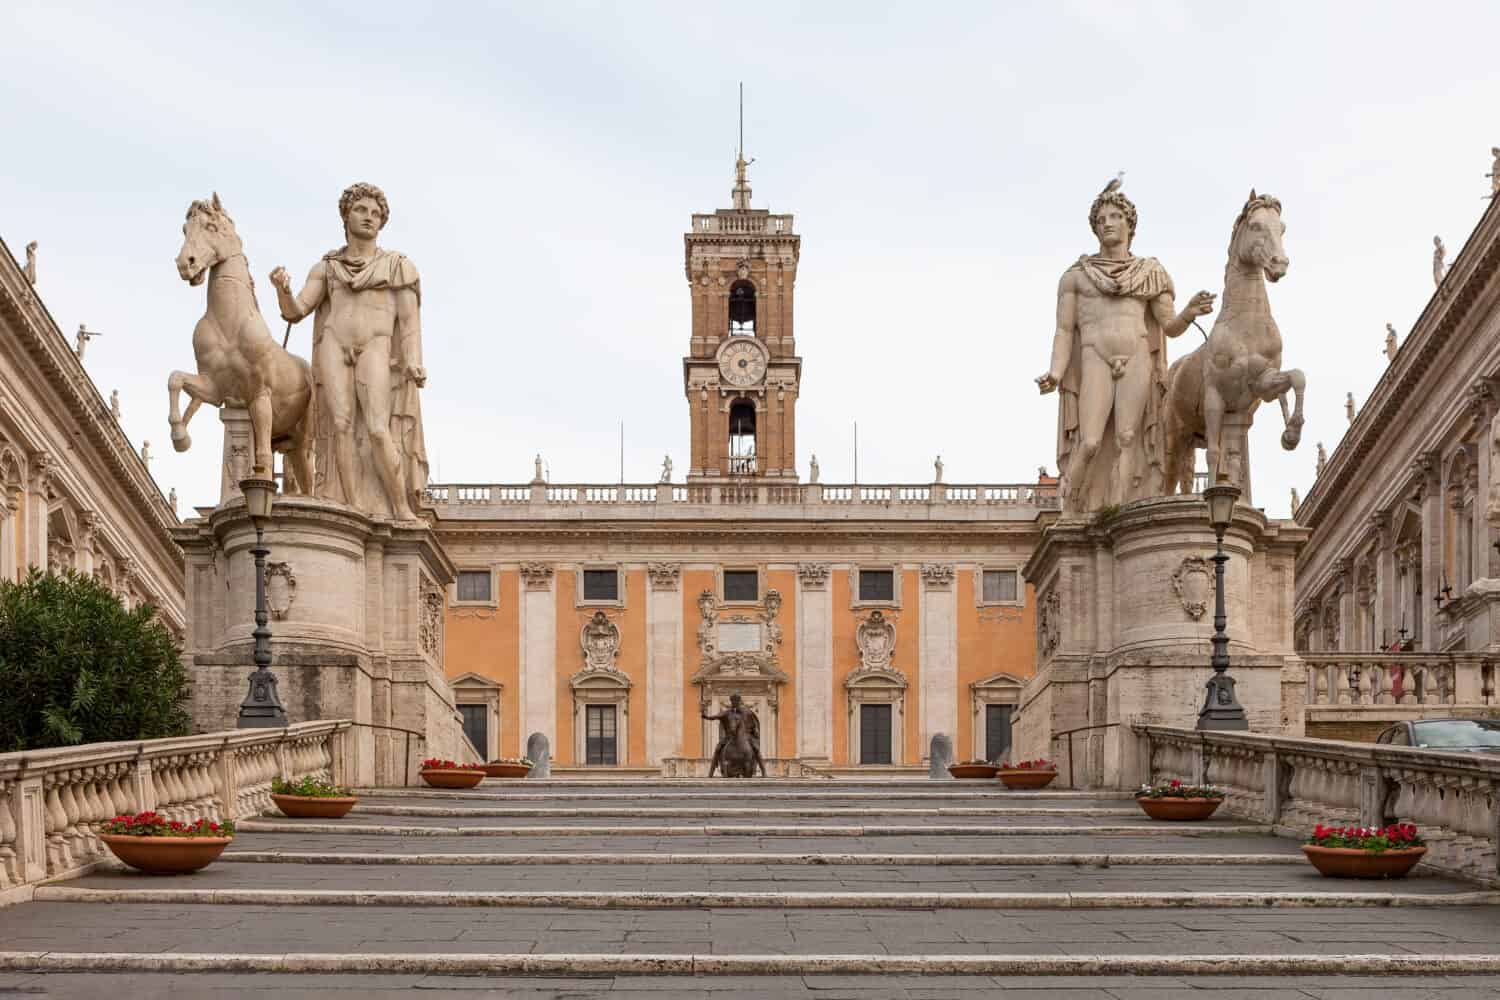 Cordonata Capitolina, Dioscuri statues, Campidoglio square on Capitolium or Capitoline Hill  in Rome, Italy. 